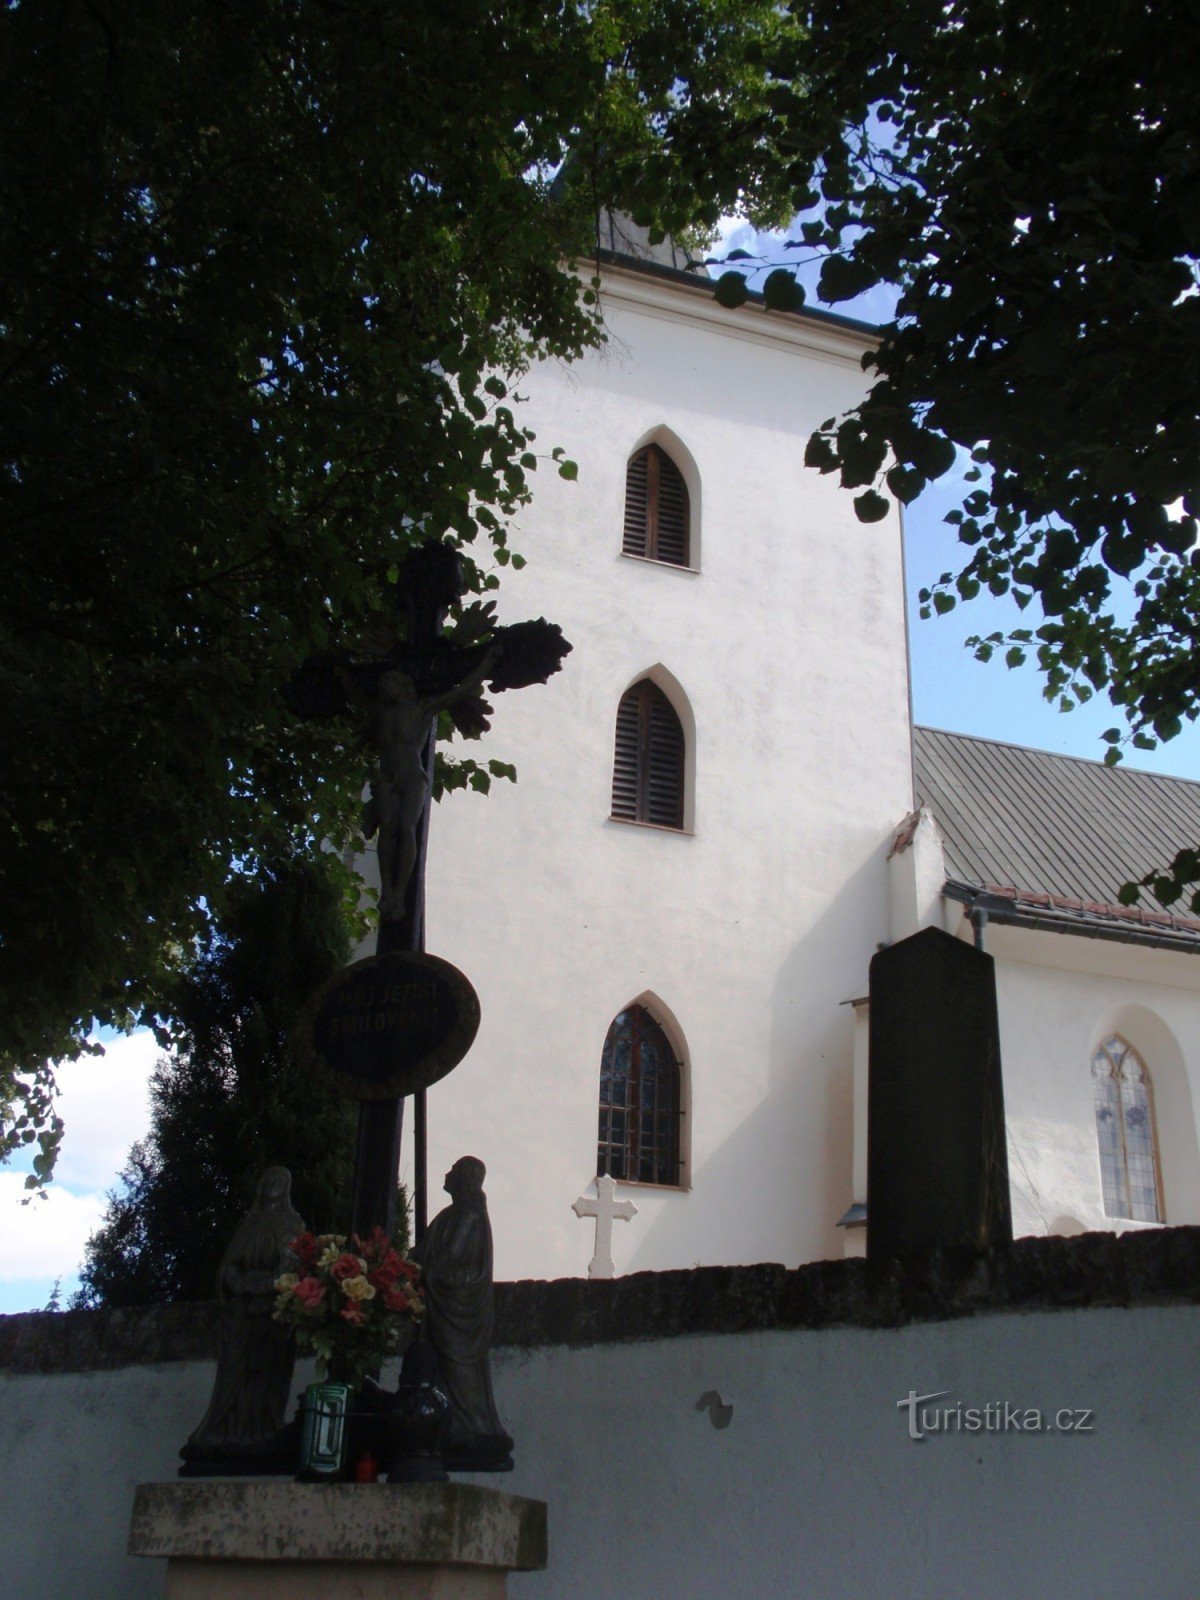 Церковь св. Филип и Якуб в Лелековицах